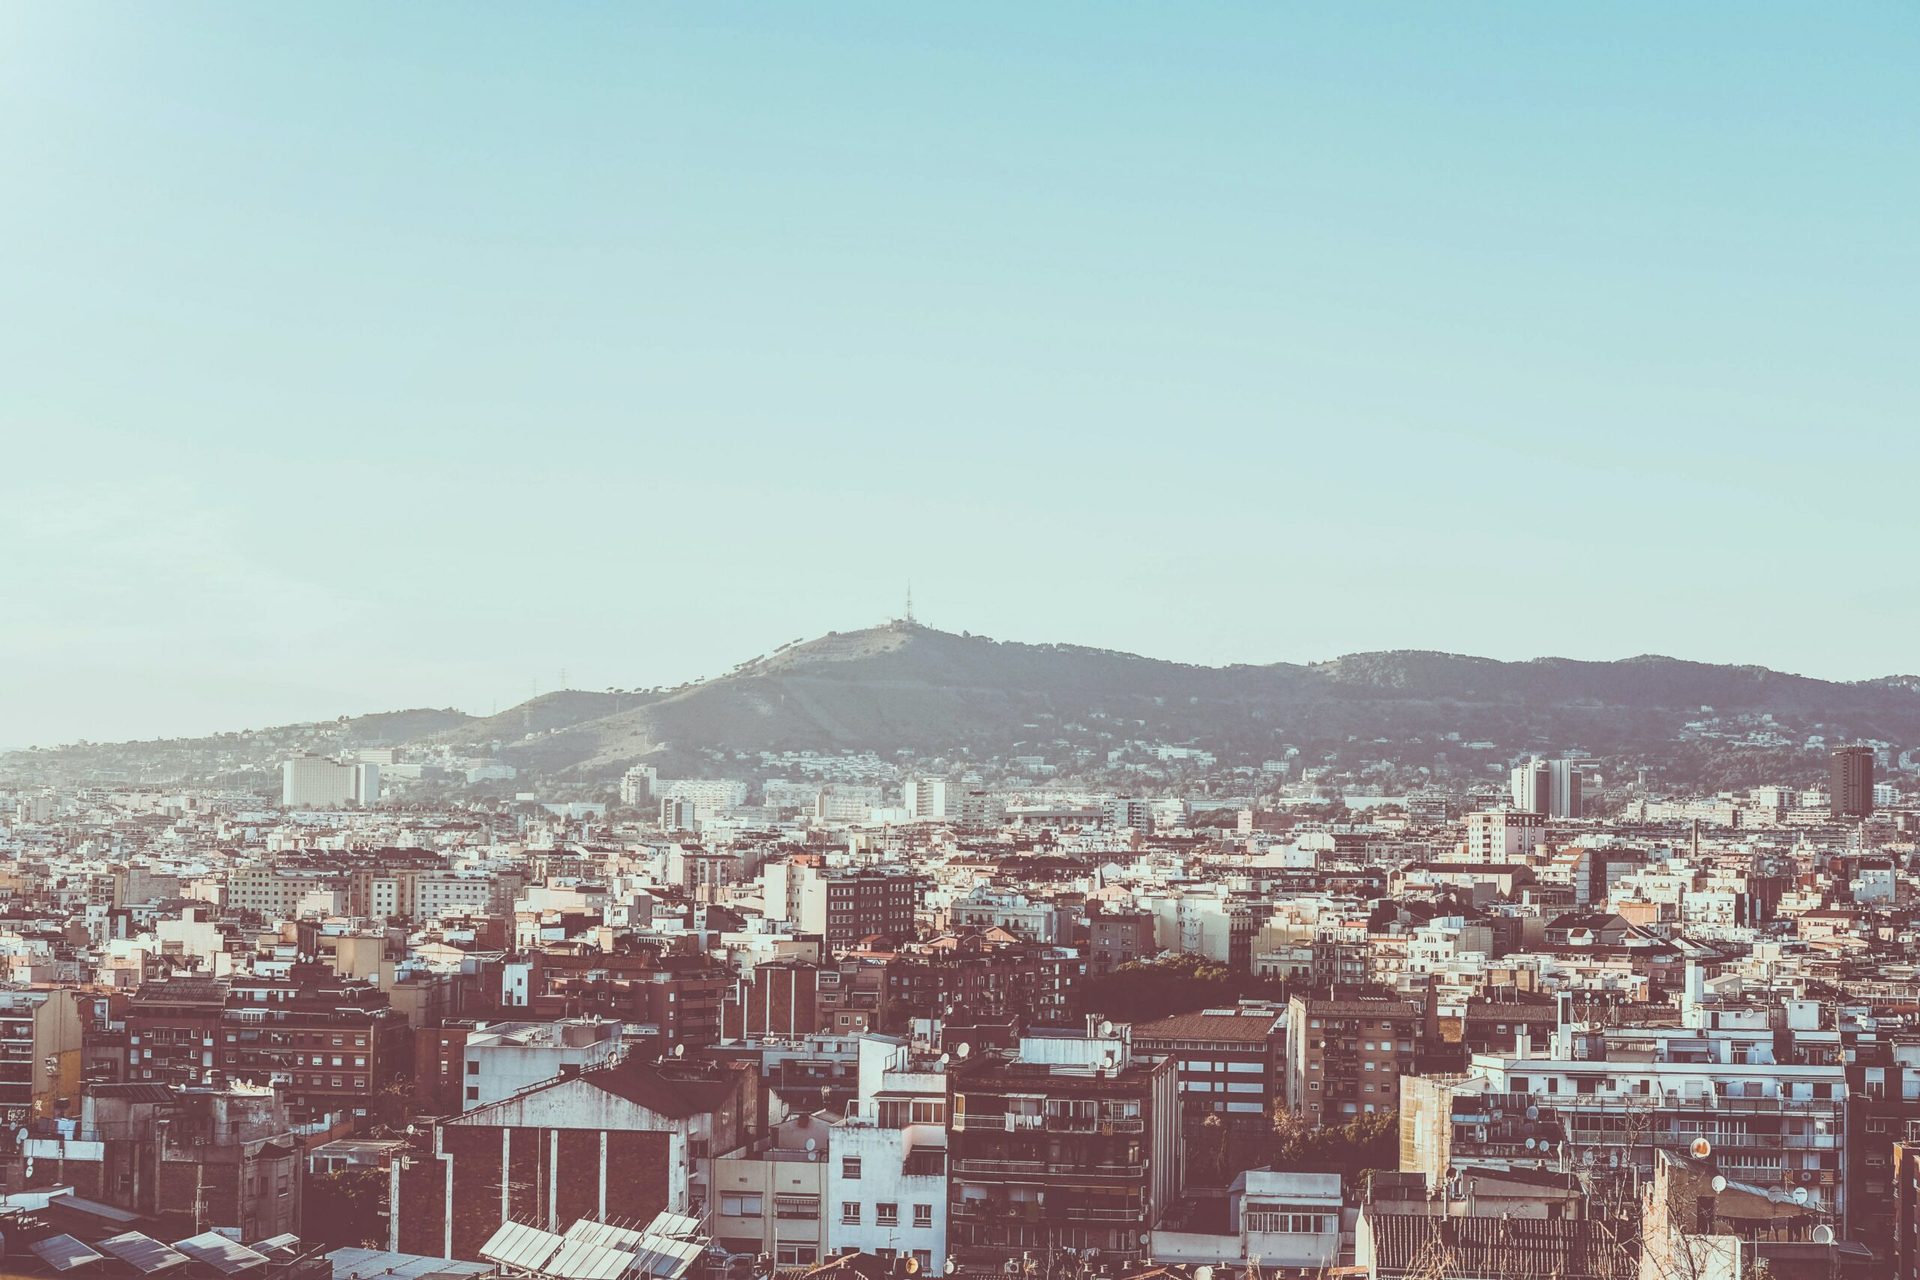 Iniciem un estudi sobre les taxes de recollida de residus als municipis de l’Àrea Metropolitana de Barcelona